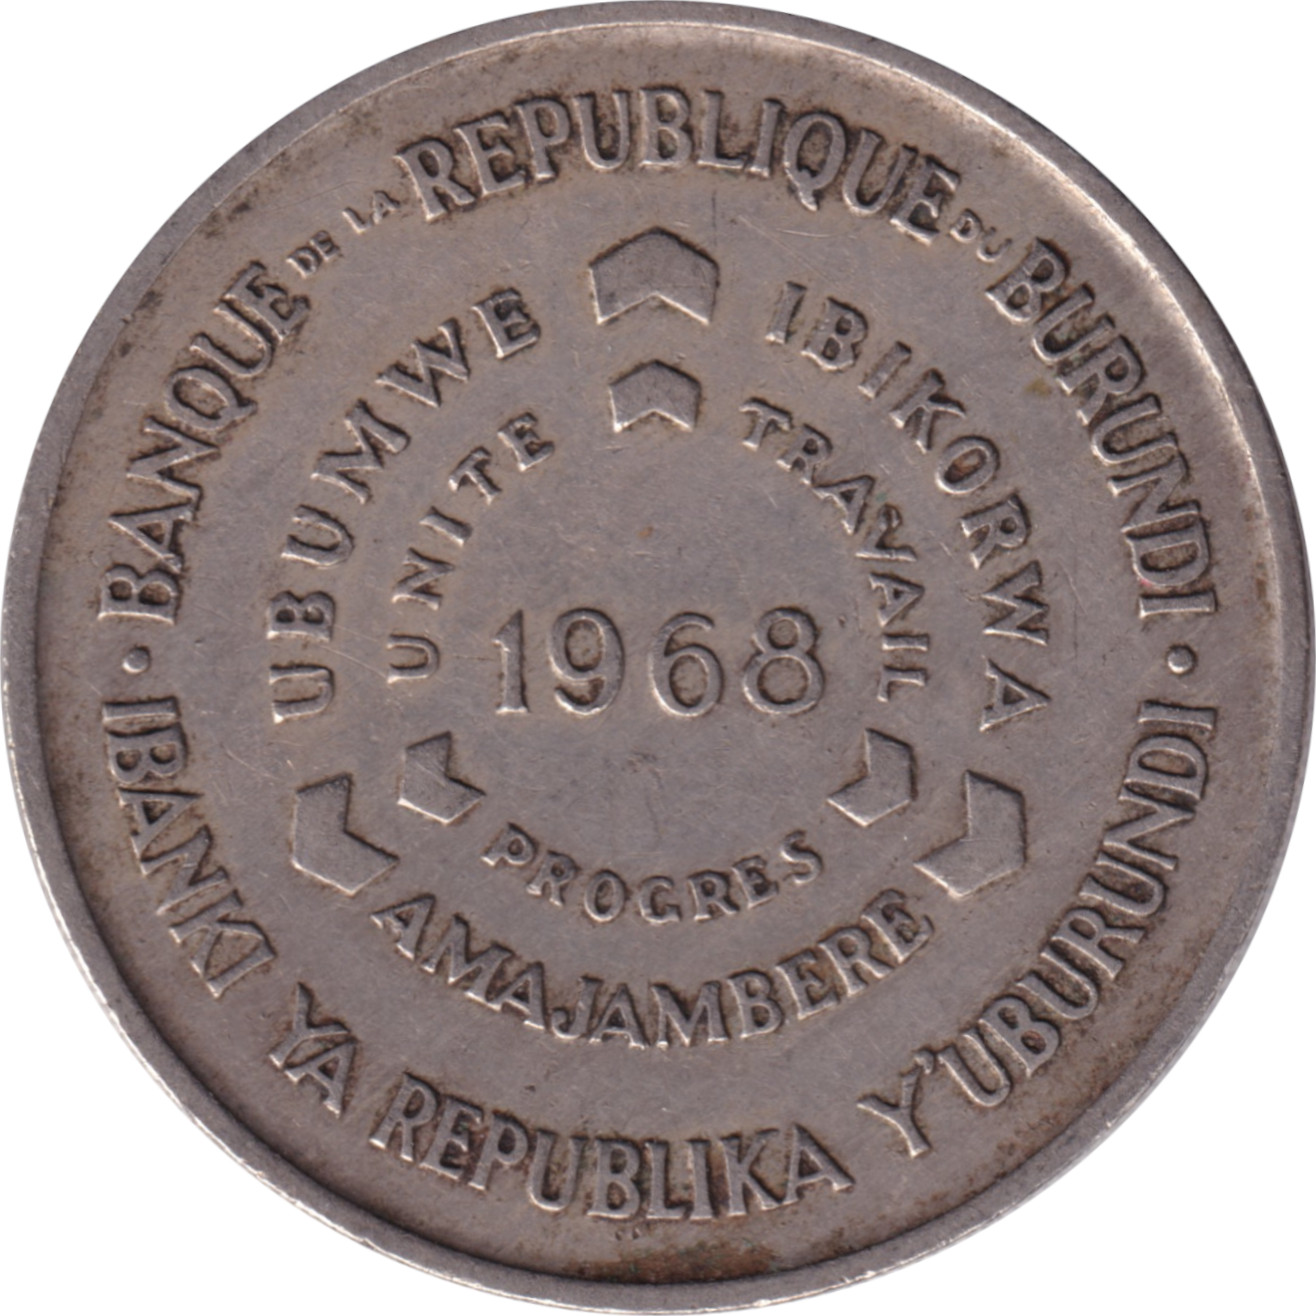 10 francs - Epis - Type 1